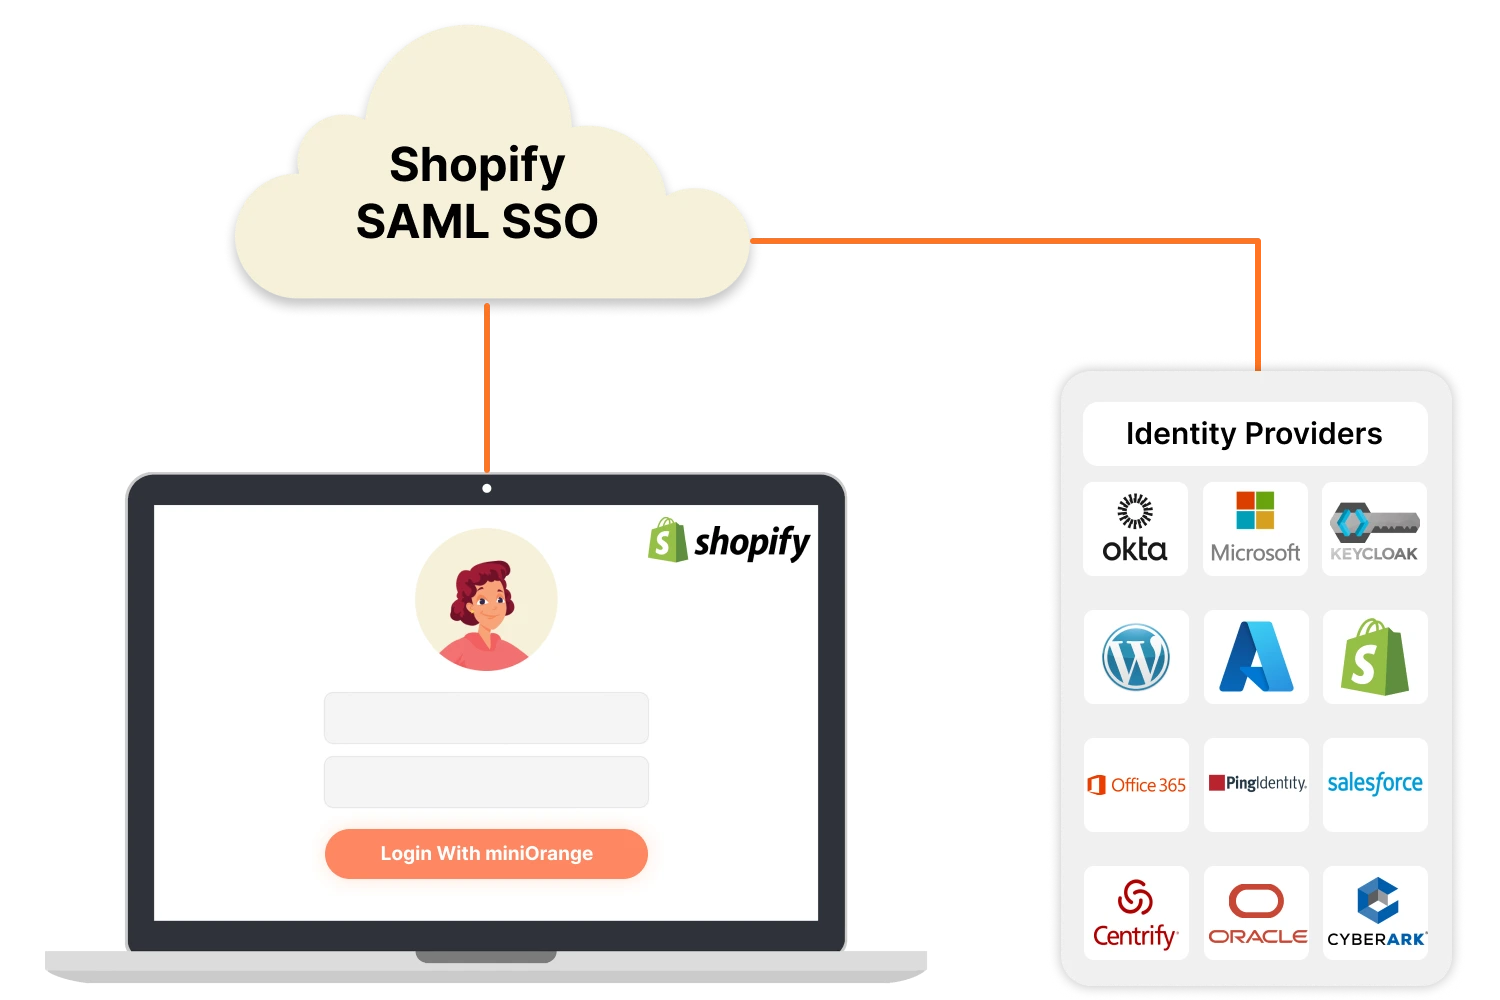 Shopify SAML SSO - login into Shopify SAML